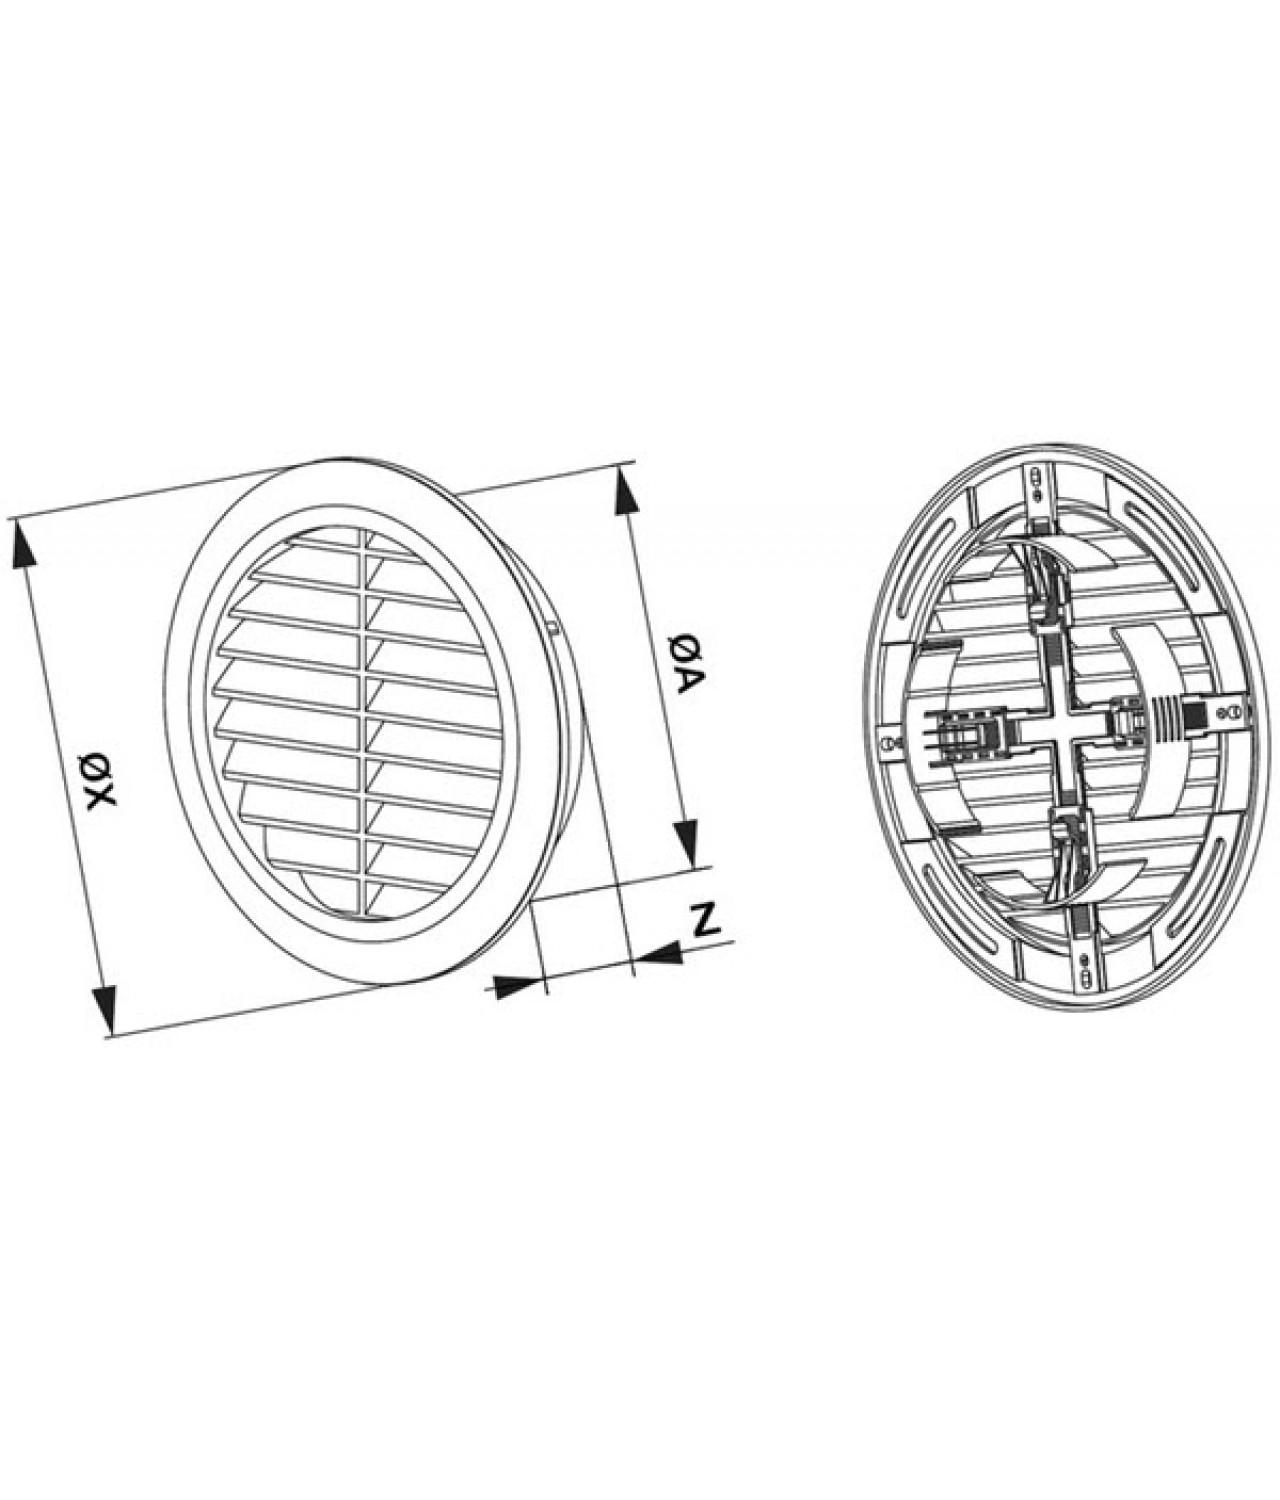 Вентиляционная решетка GRT36CG, Ø100-150/180 мм - чертеж